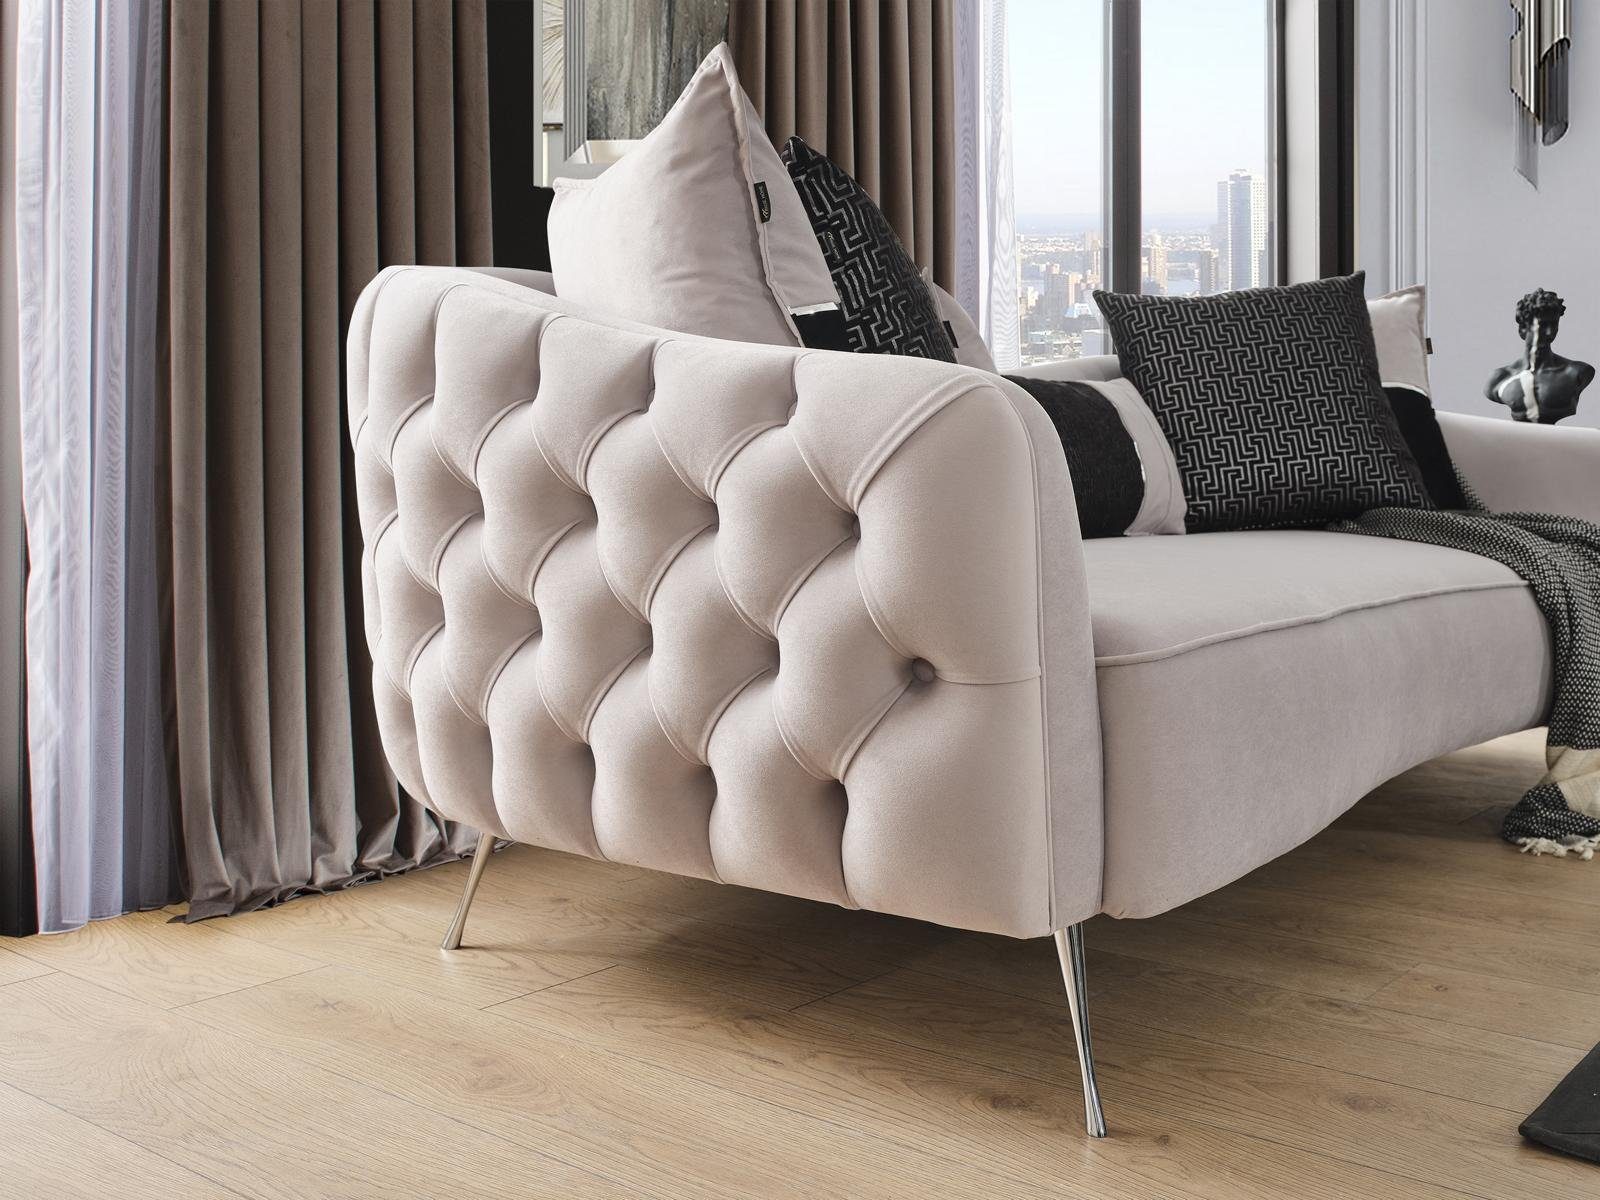 Stoff, Europa Modern in Design Sofas Teile, Sofa Made Sofa Chesterfield Dreisitzer 1 JVmoebel 3 Sitzer